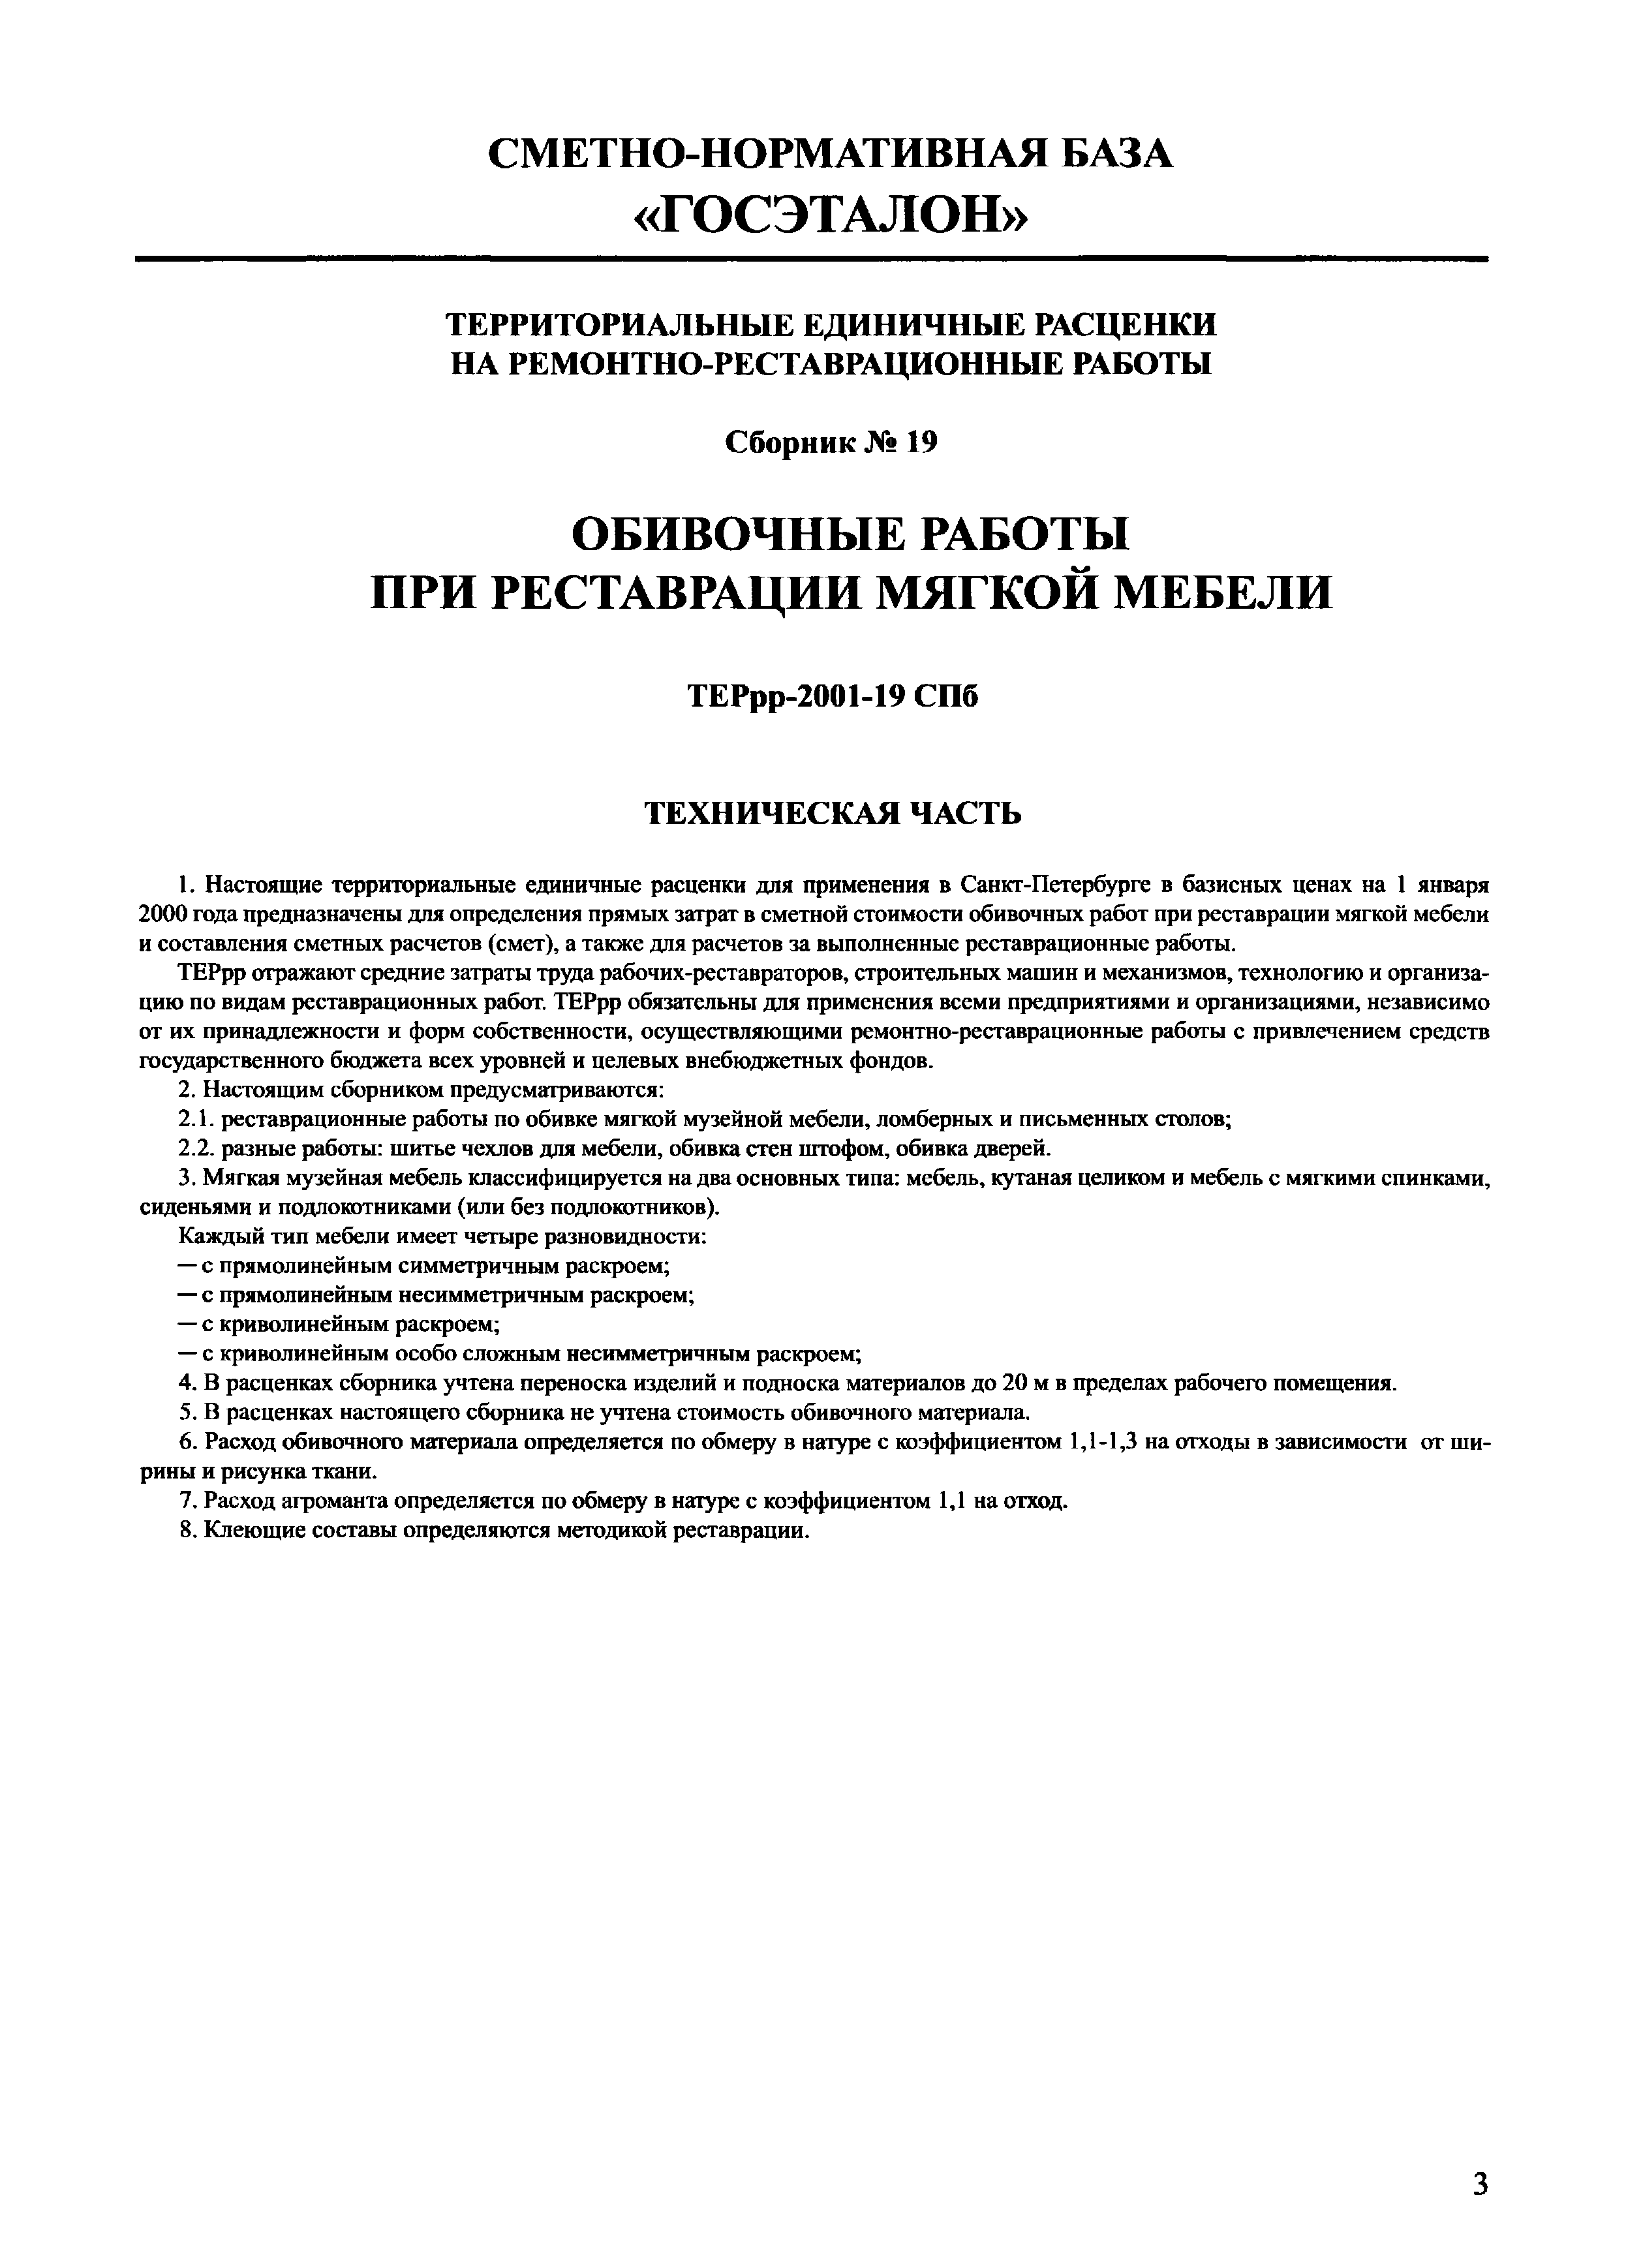 ТЕРрр 2001-19 СПб